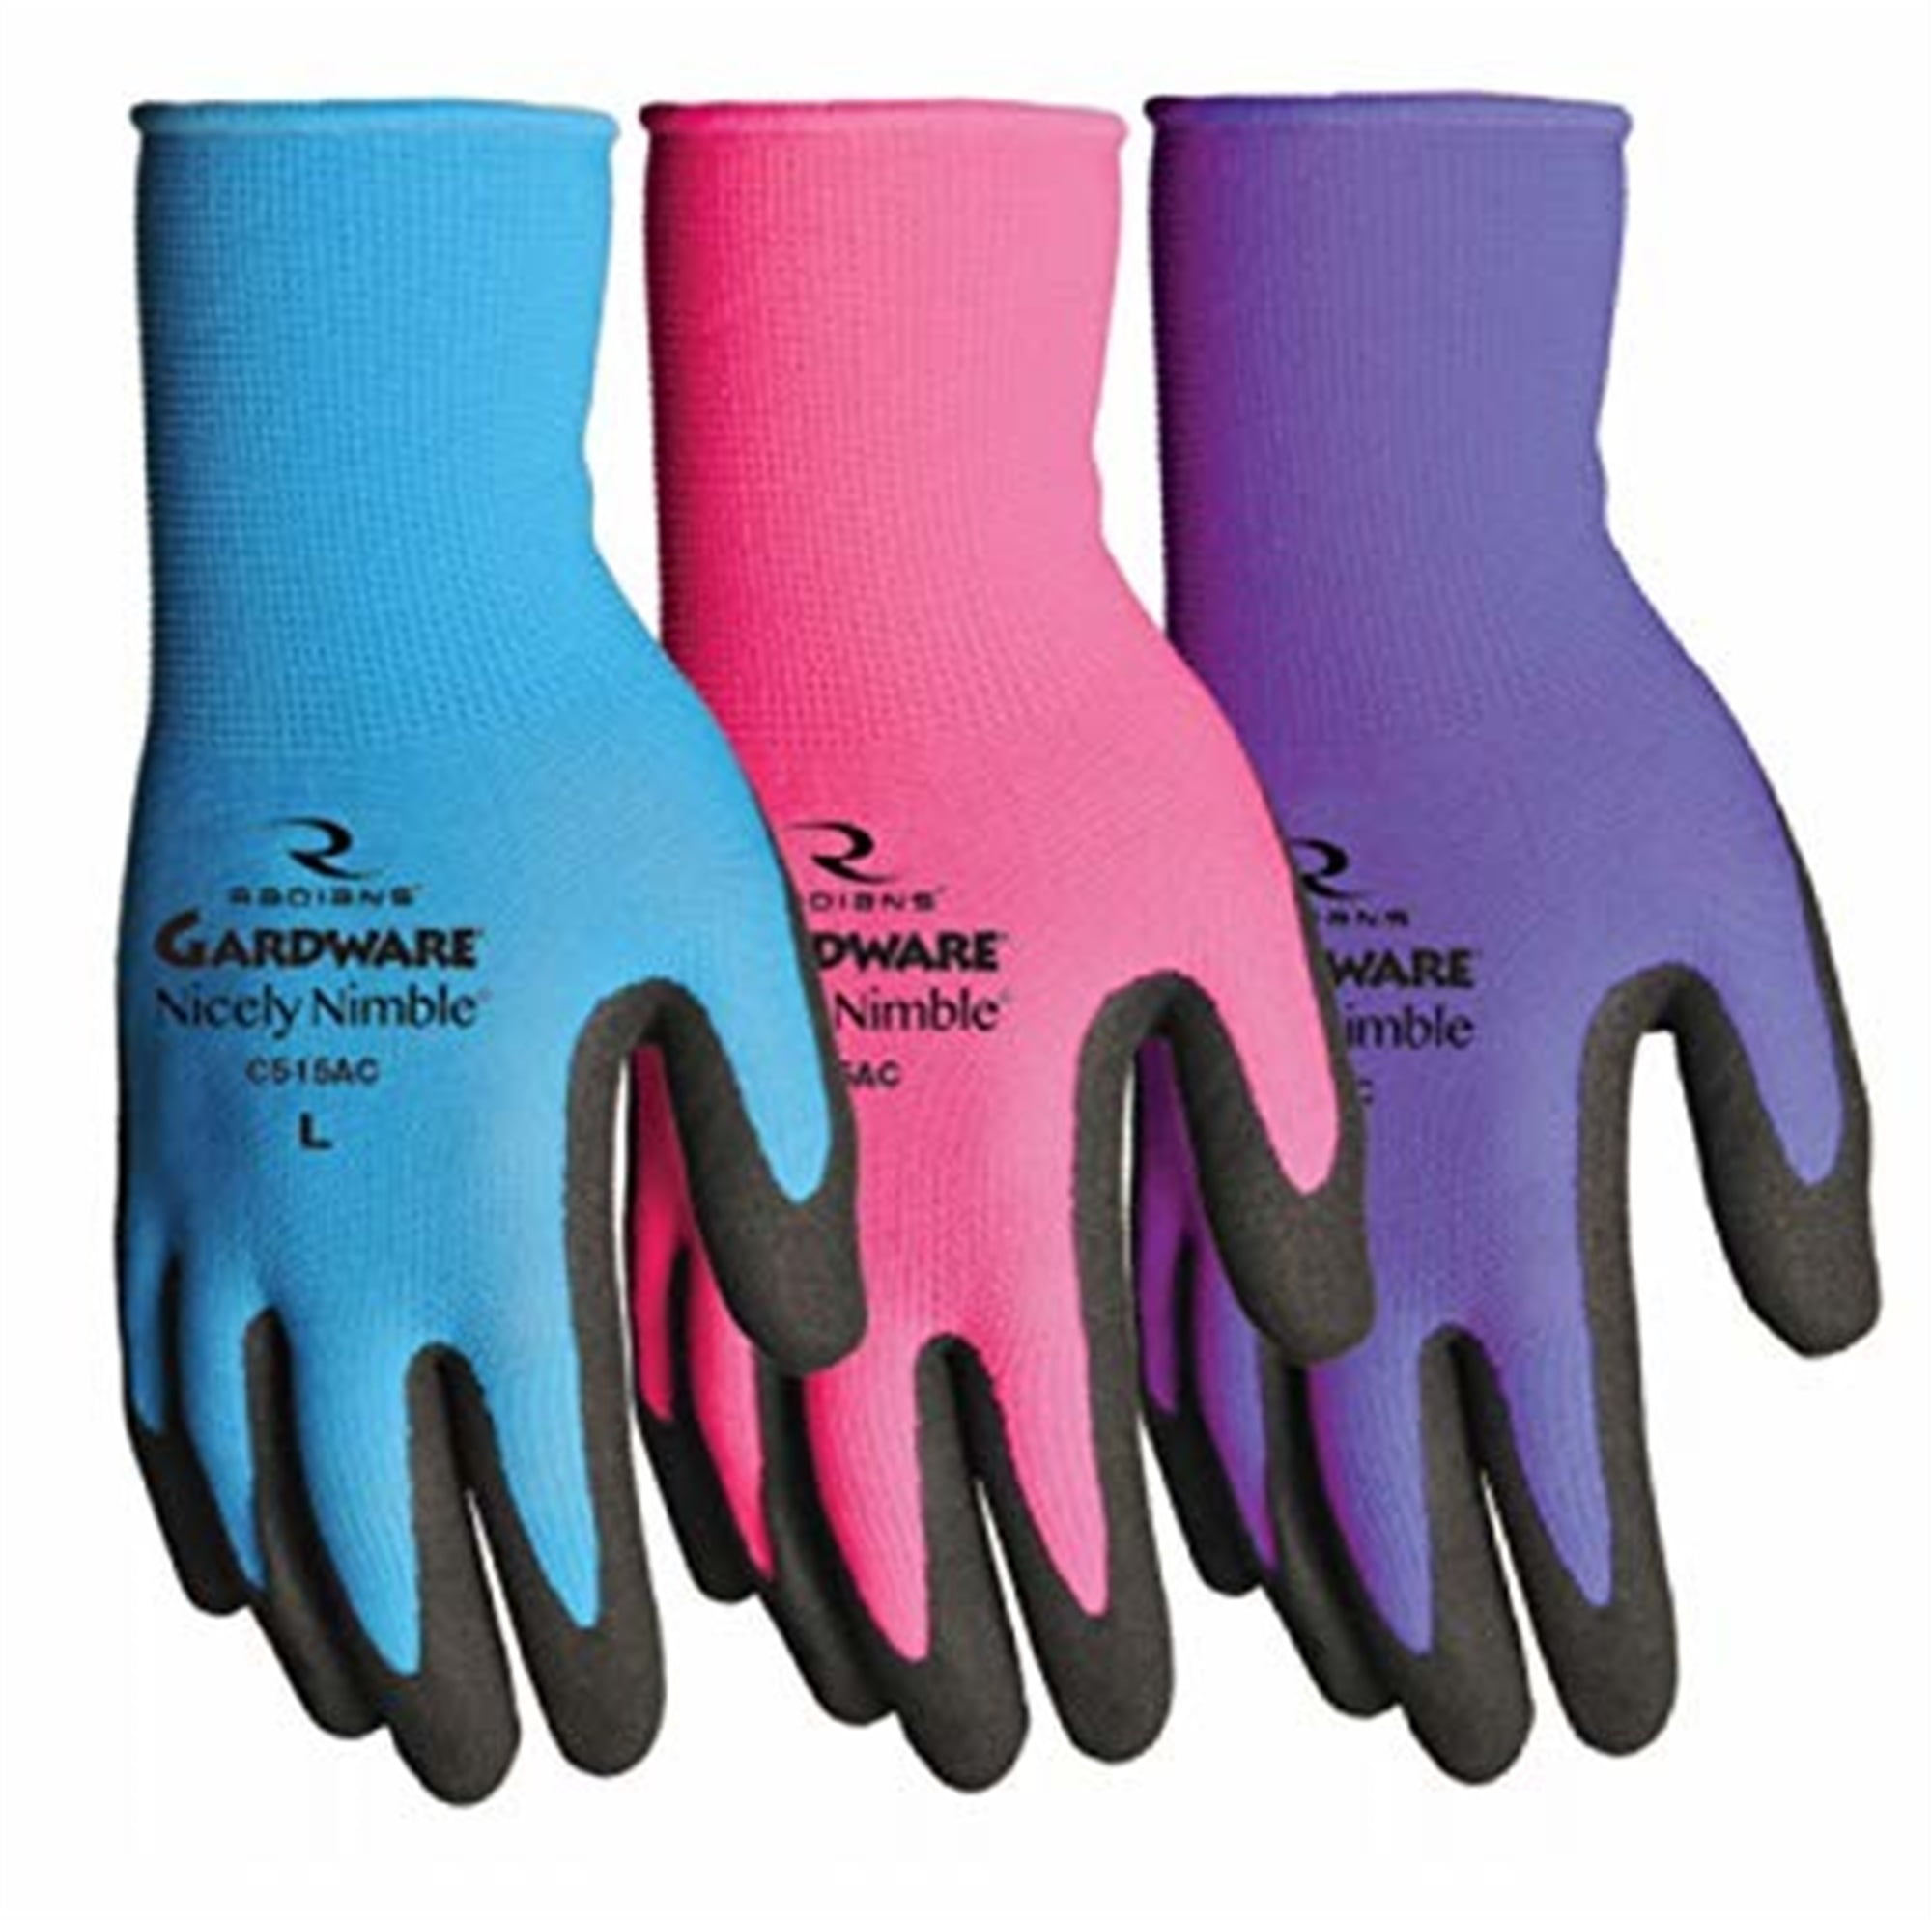 Boss FLEXI grip Latex Knit Garden Gloves Sm/Md/Lg/XL #8426S #8426M #8426L #8426X 